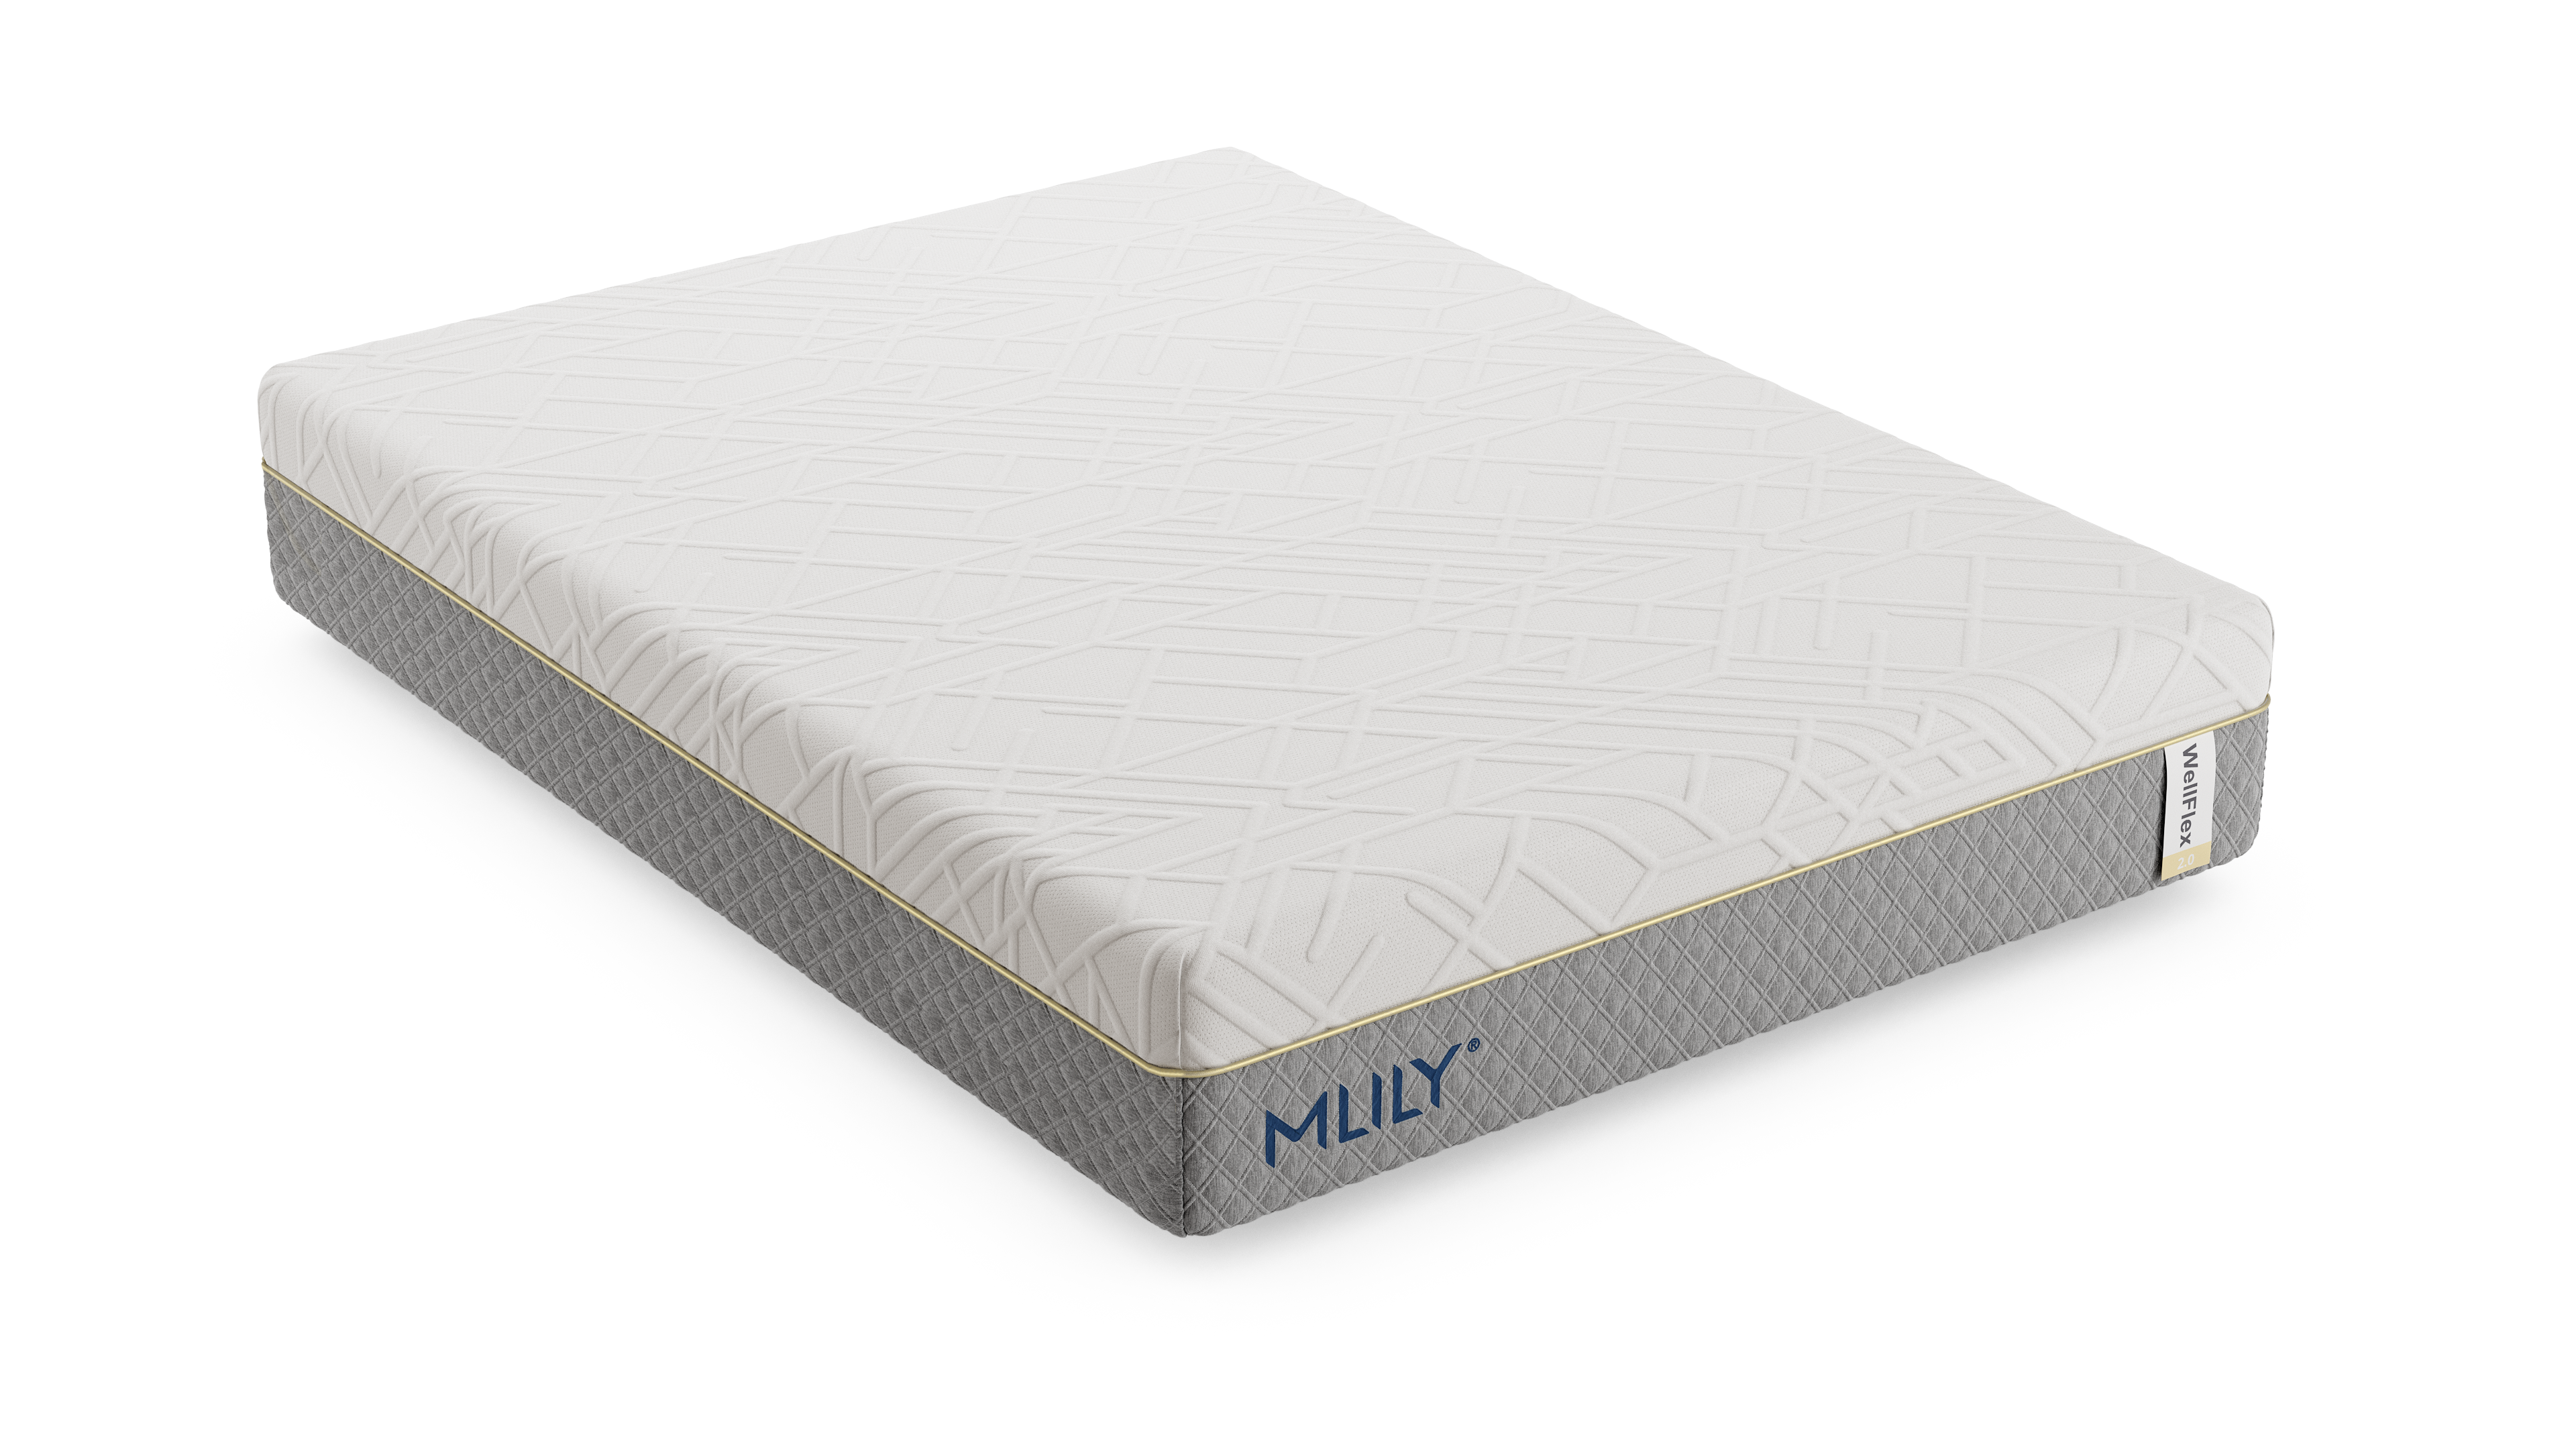 mlily mattress reviews